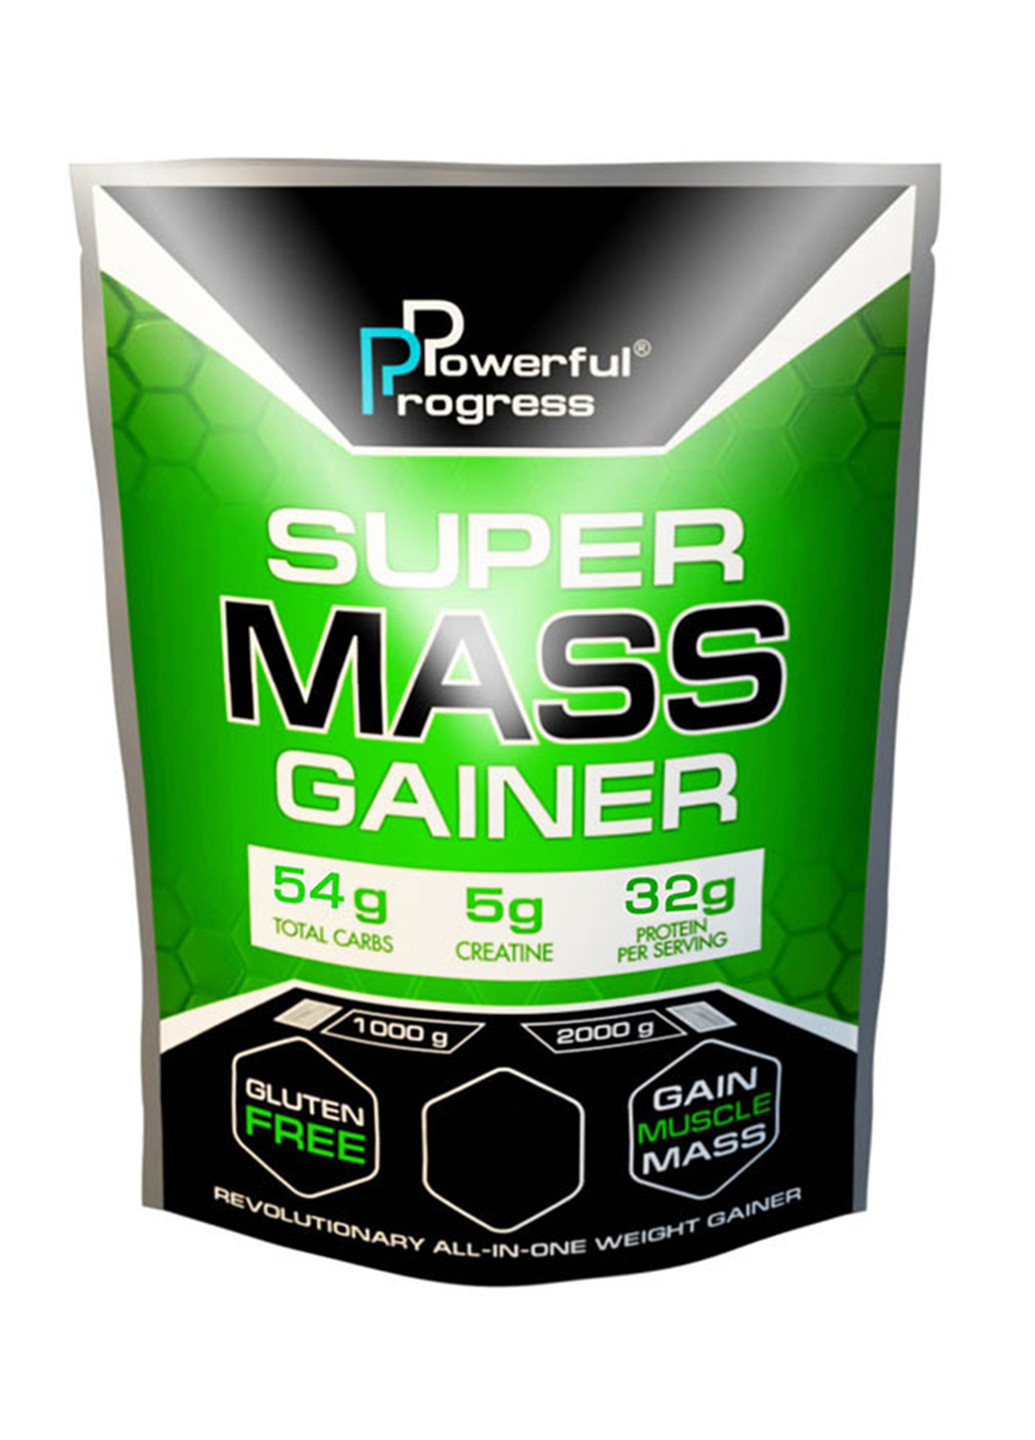 Углеводный гейнер Super Mass Gainer - 1000g Tiramisu Powerful Progress гейнер (244701379)